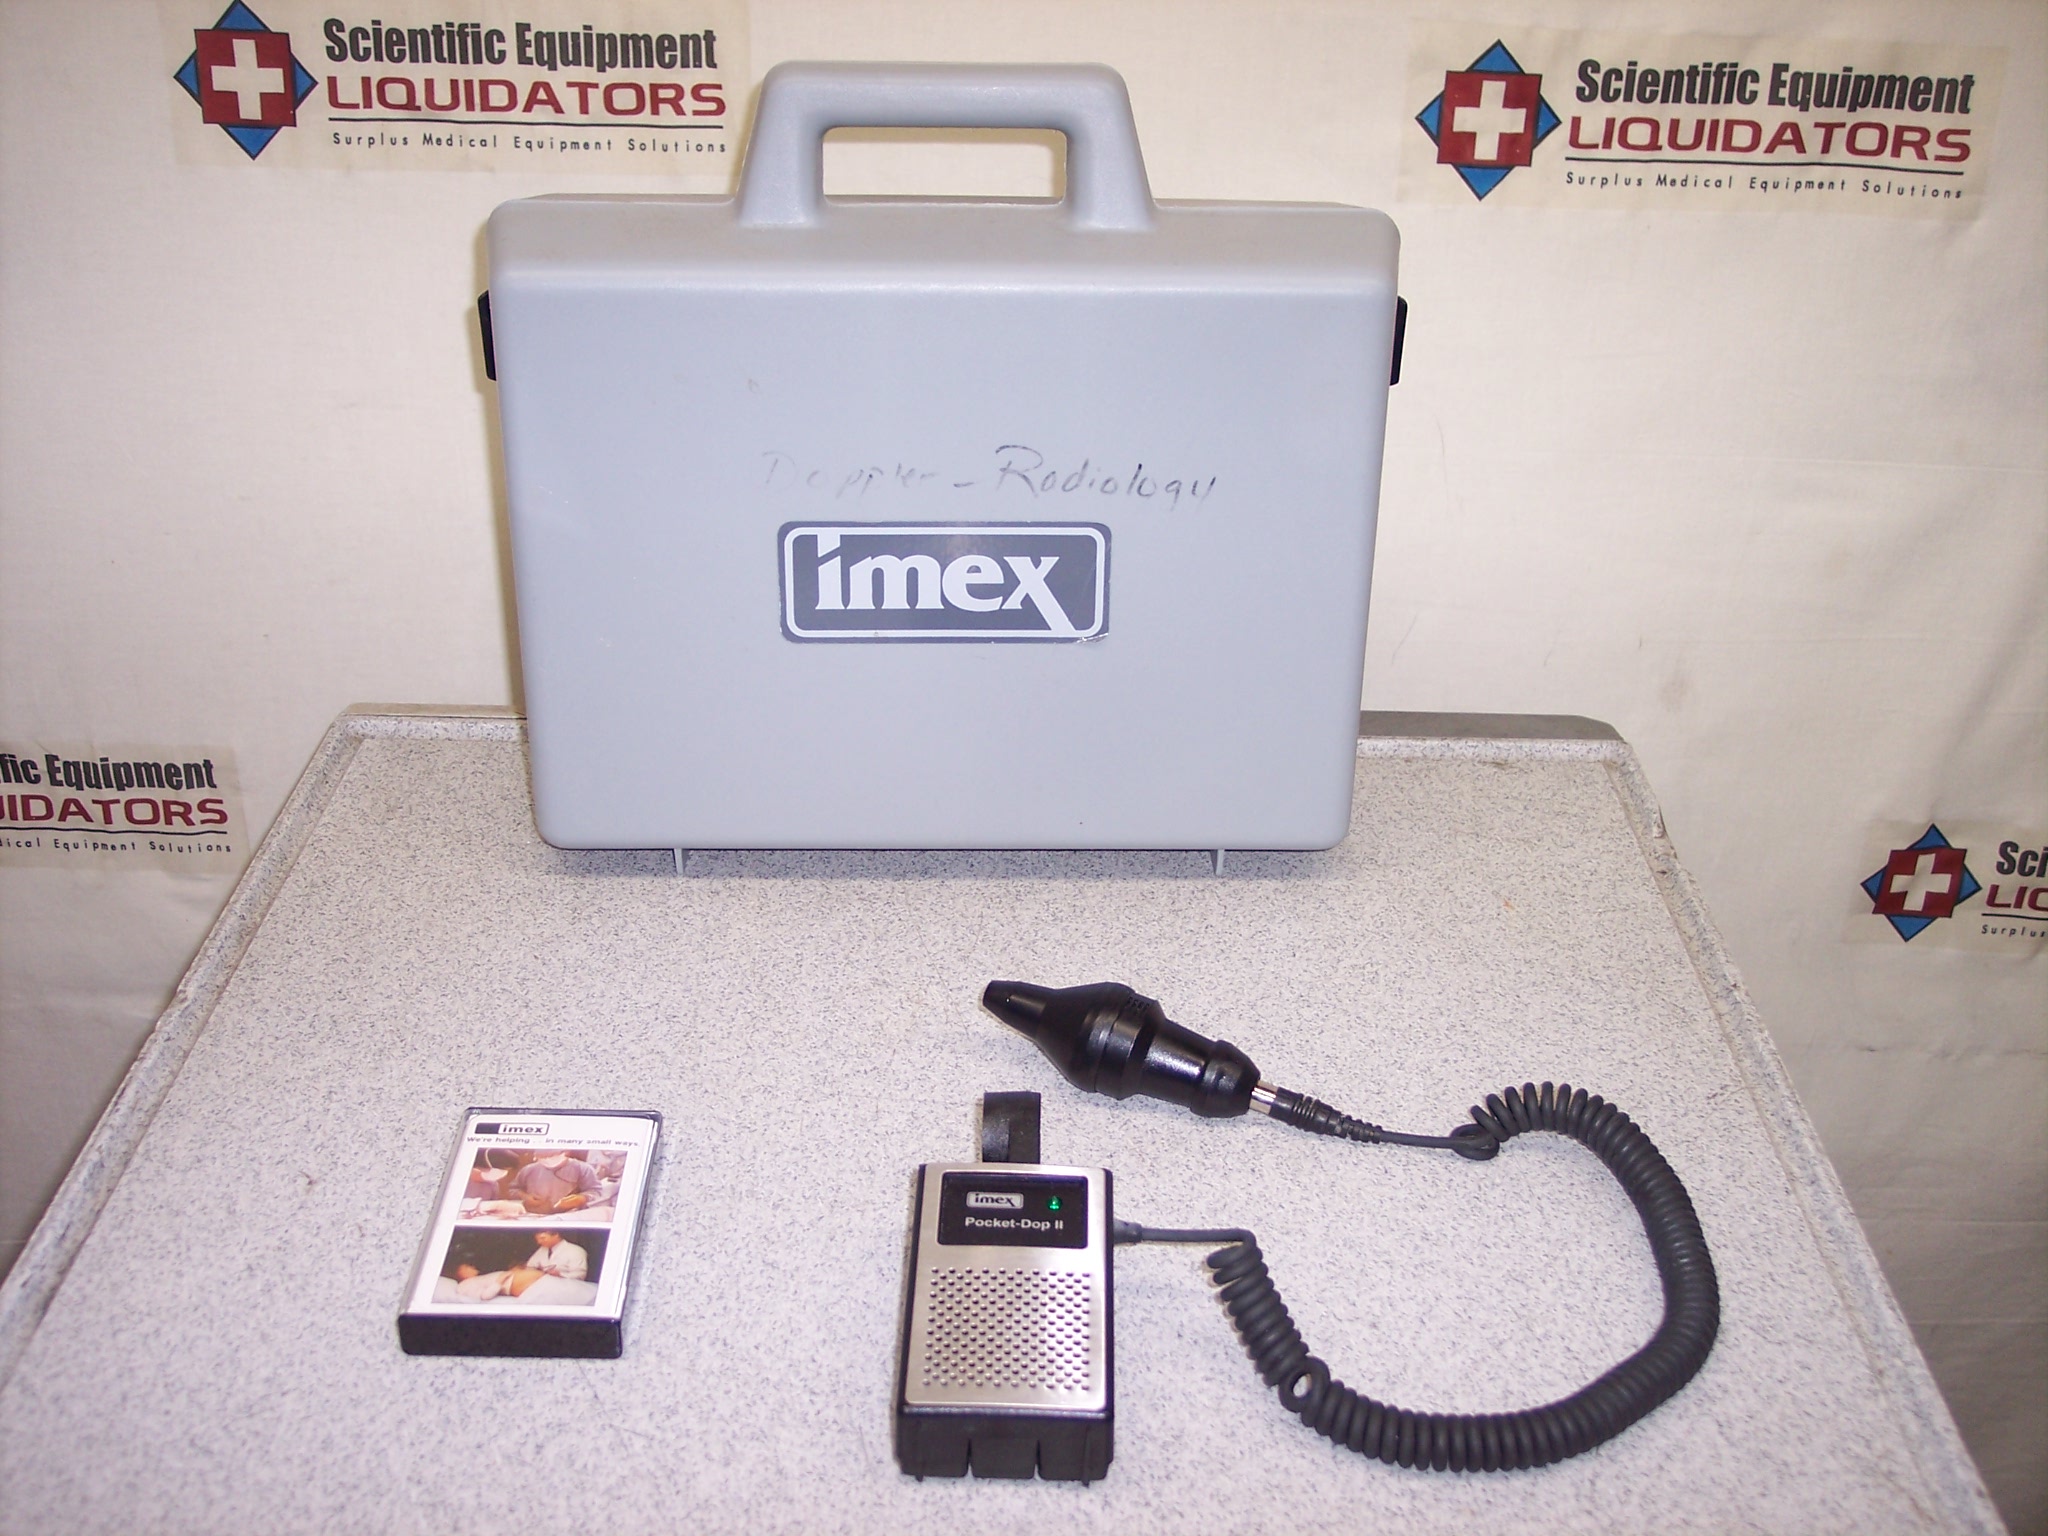 Imex Pocket-Dop II Vascular Doppler